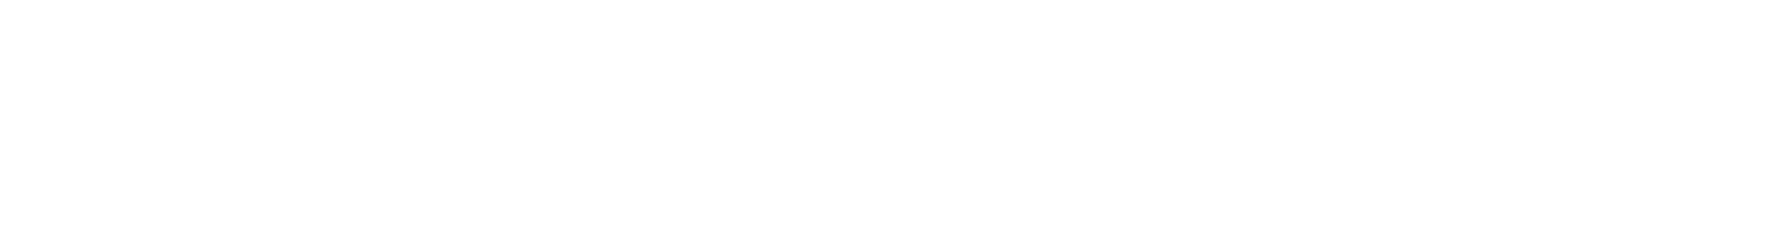 Telesat logo grand pour les fonds sombres (PNG transparent)